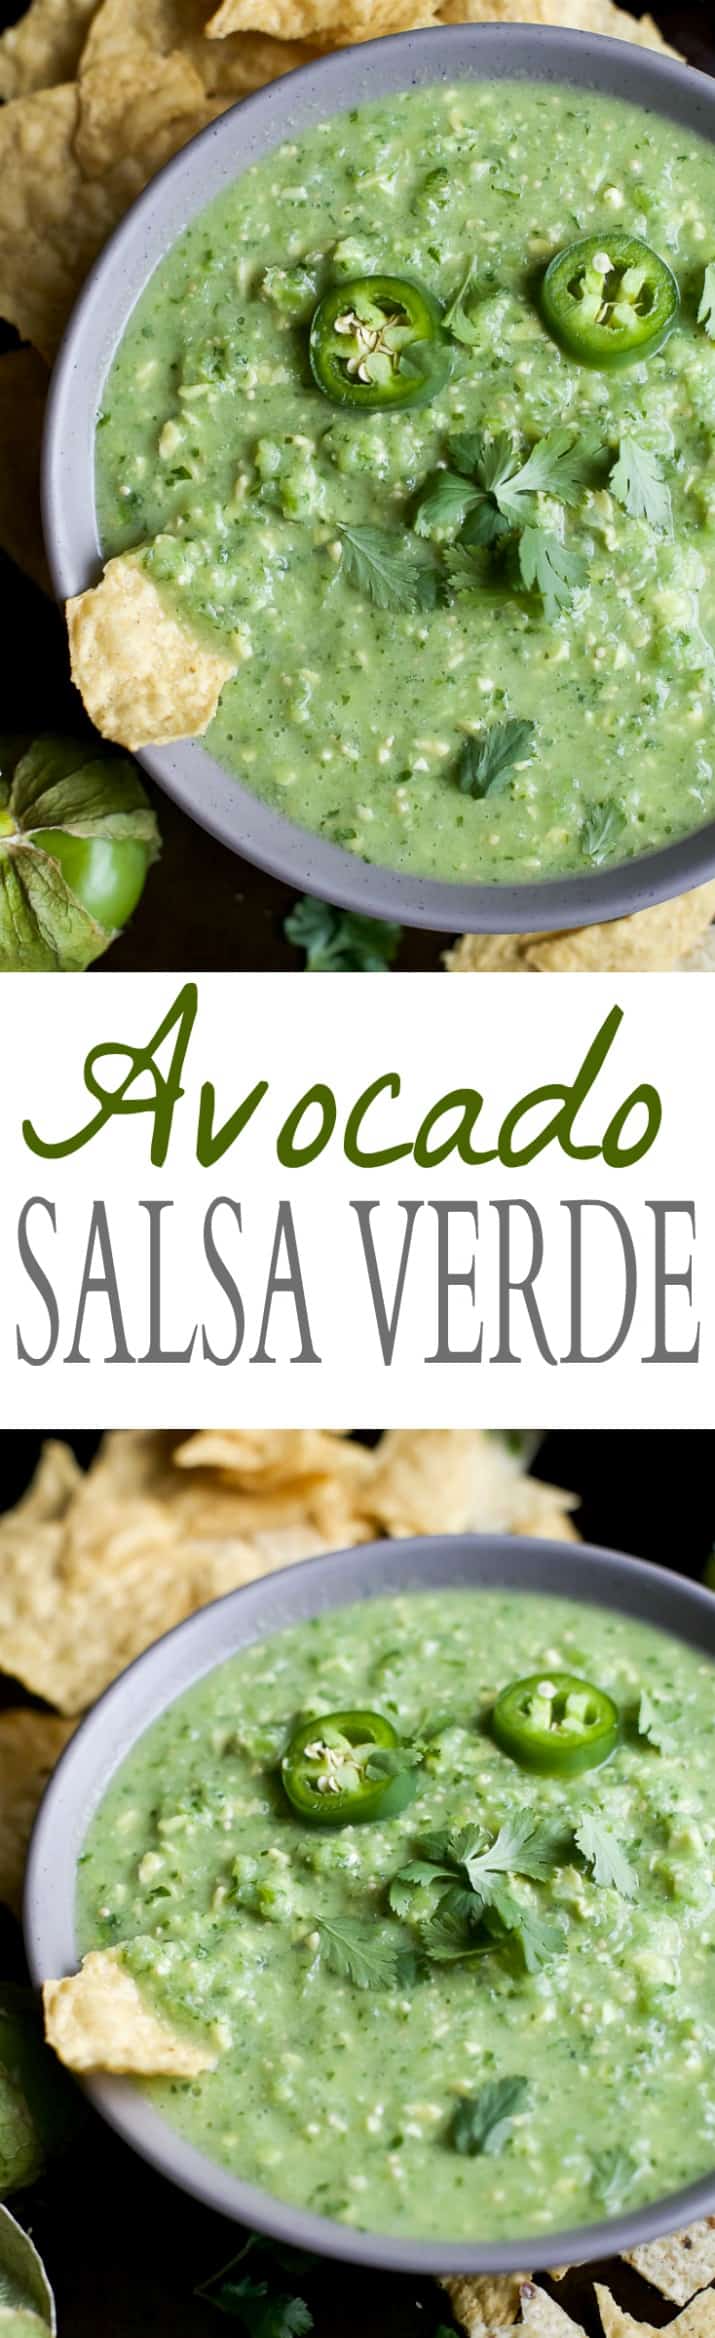 Pinterest image for Avocado Salsa Verde